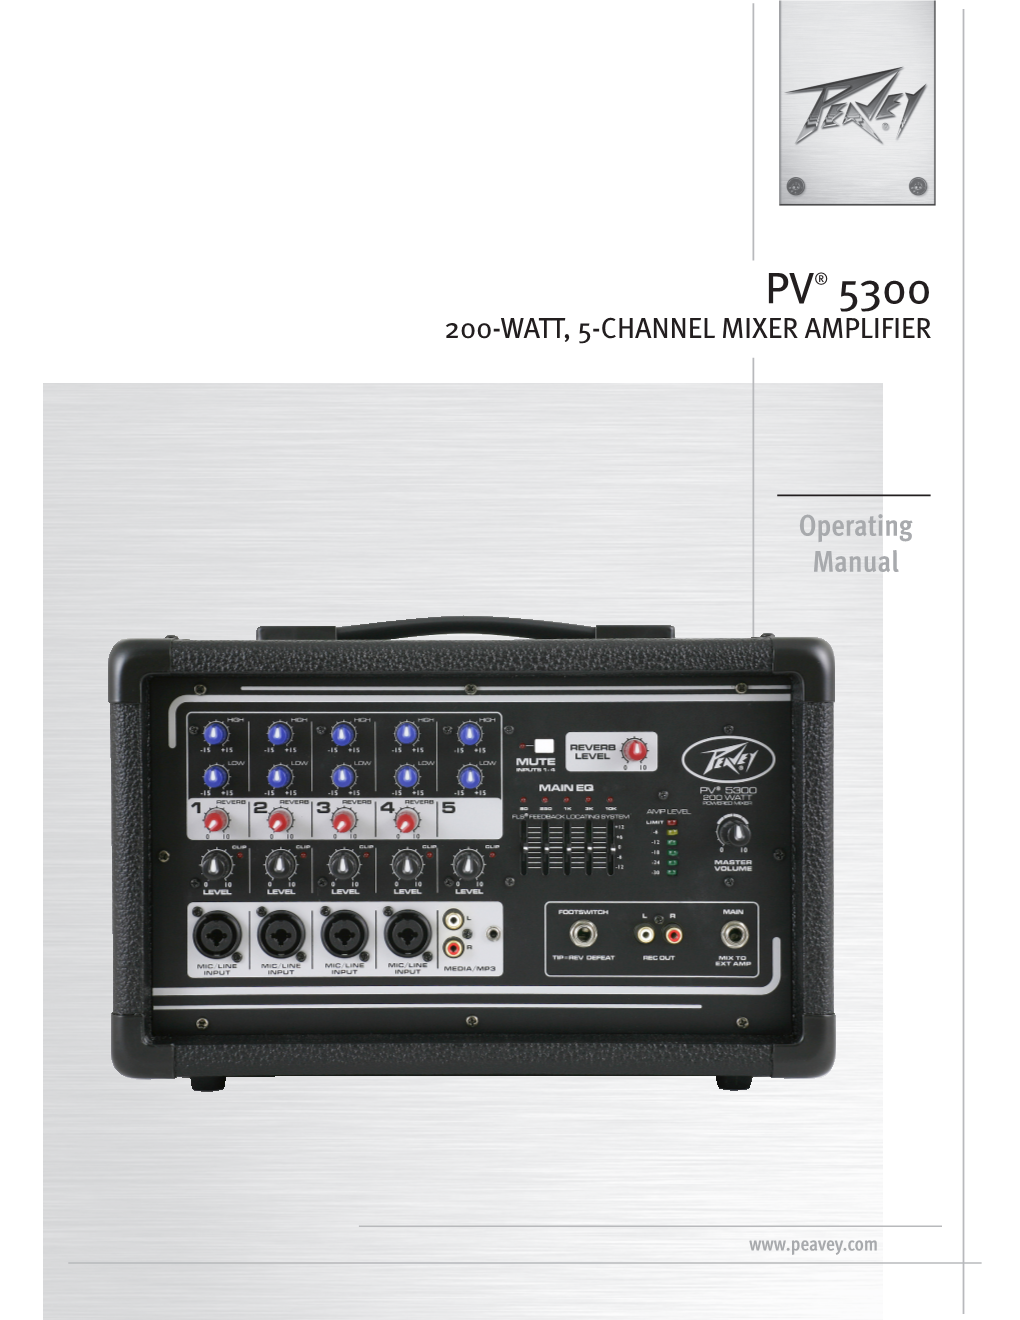 PV® 5300 200-Watt, 5-Channel Mixer Amplifier